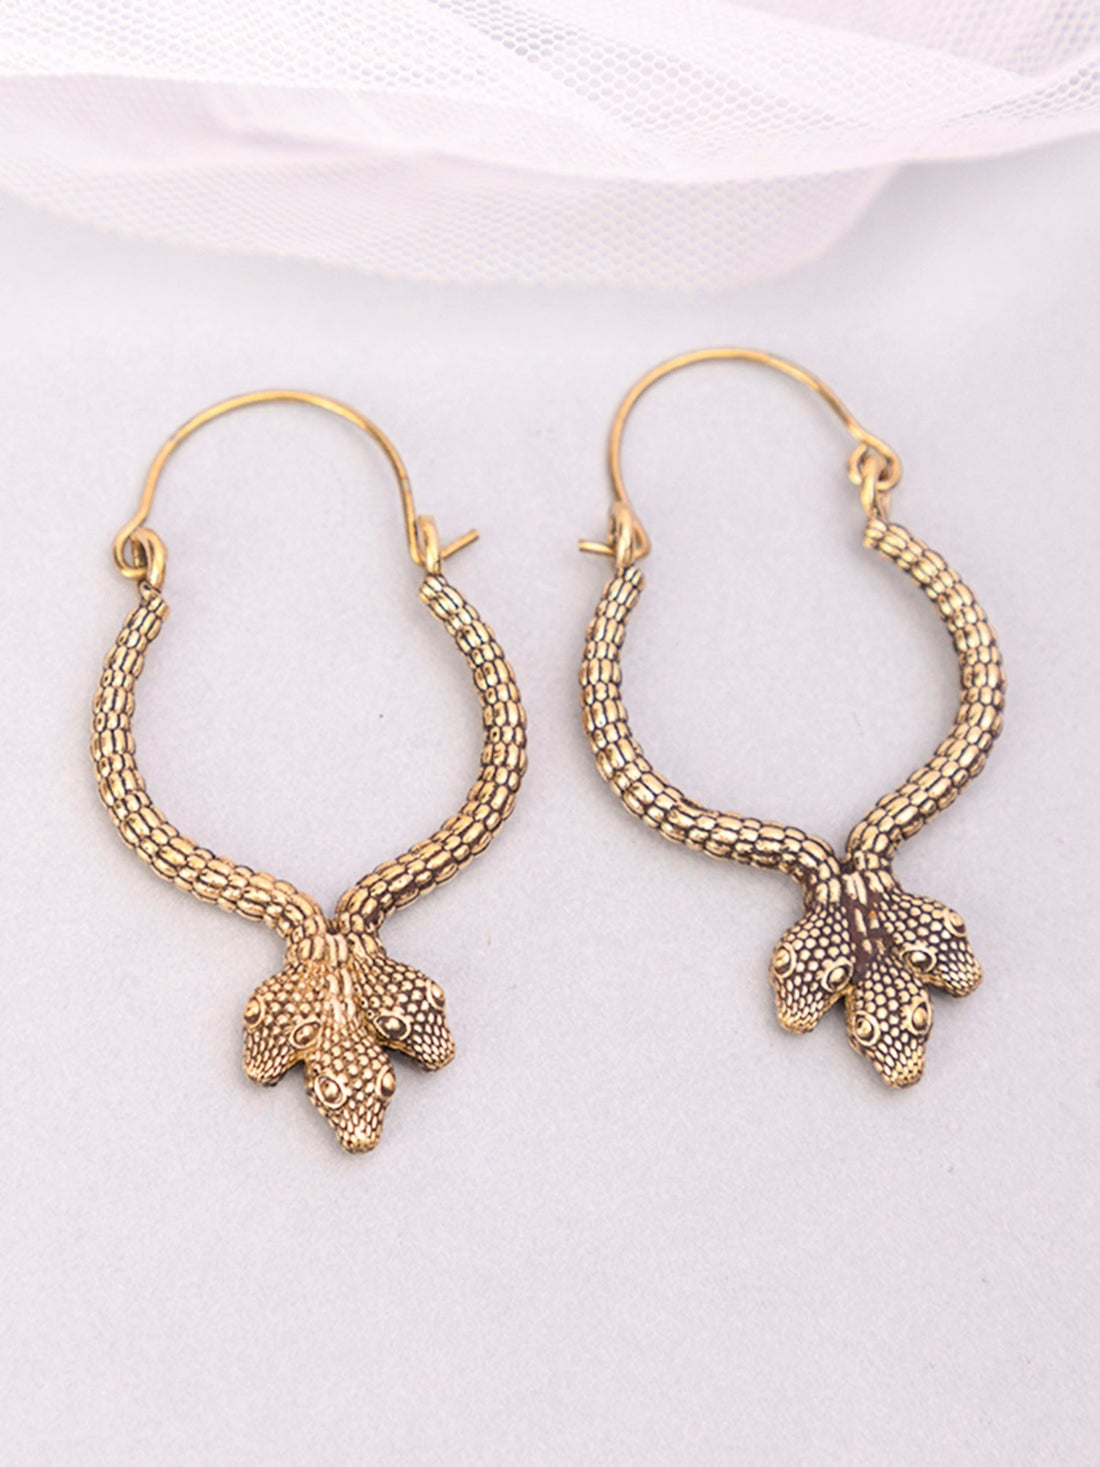 Party Wear Hoops Earrings - Traditional Gold-Plated Brass Earrings By Studio One Love